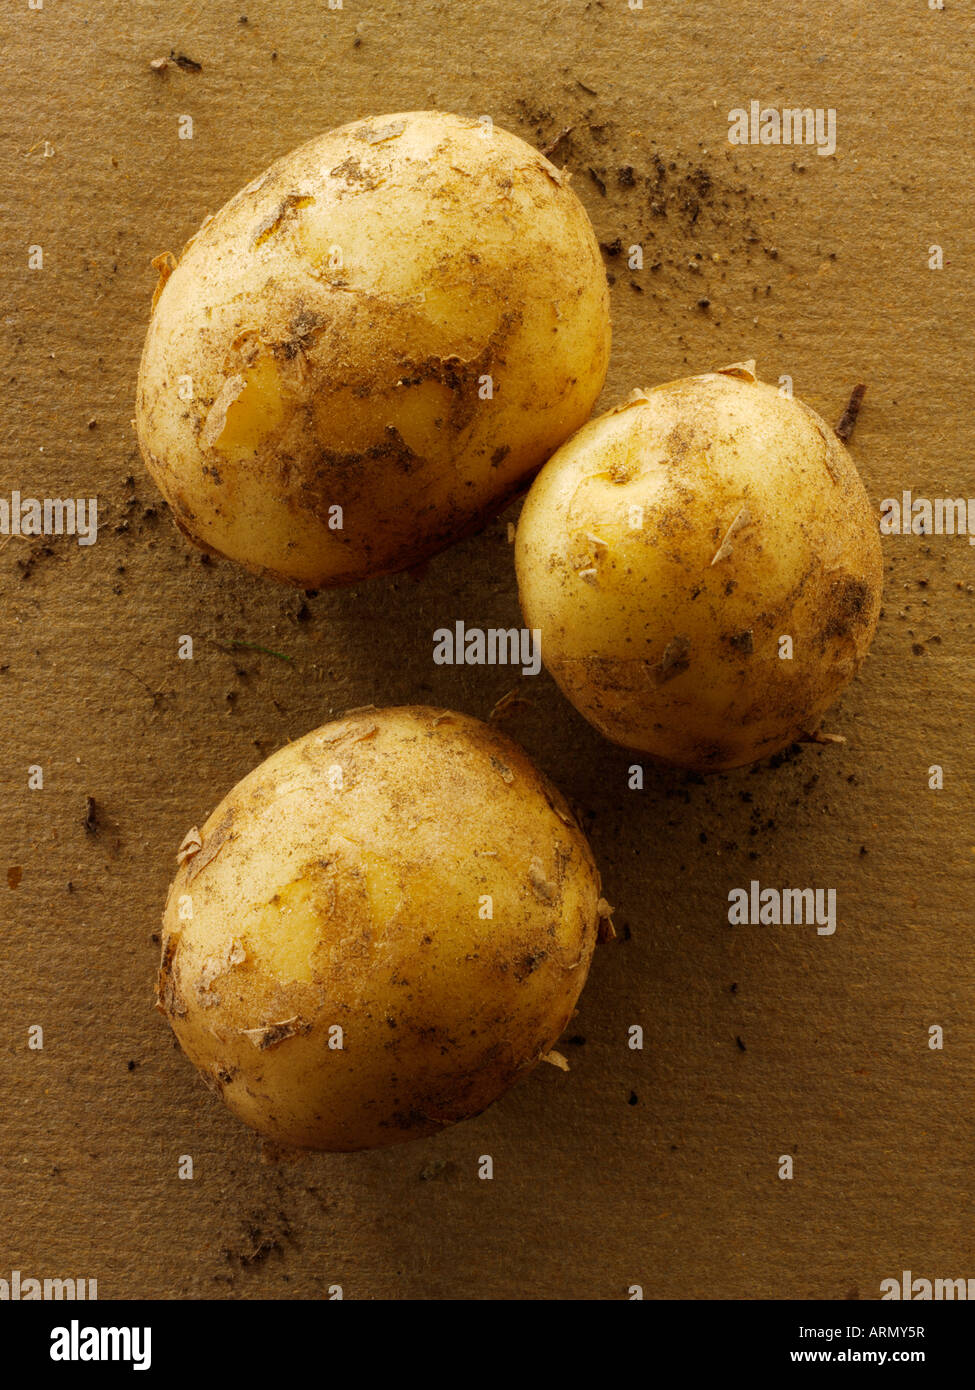 Organic new Jersey potatoes Stock Photo